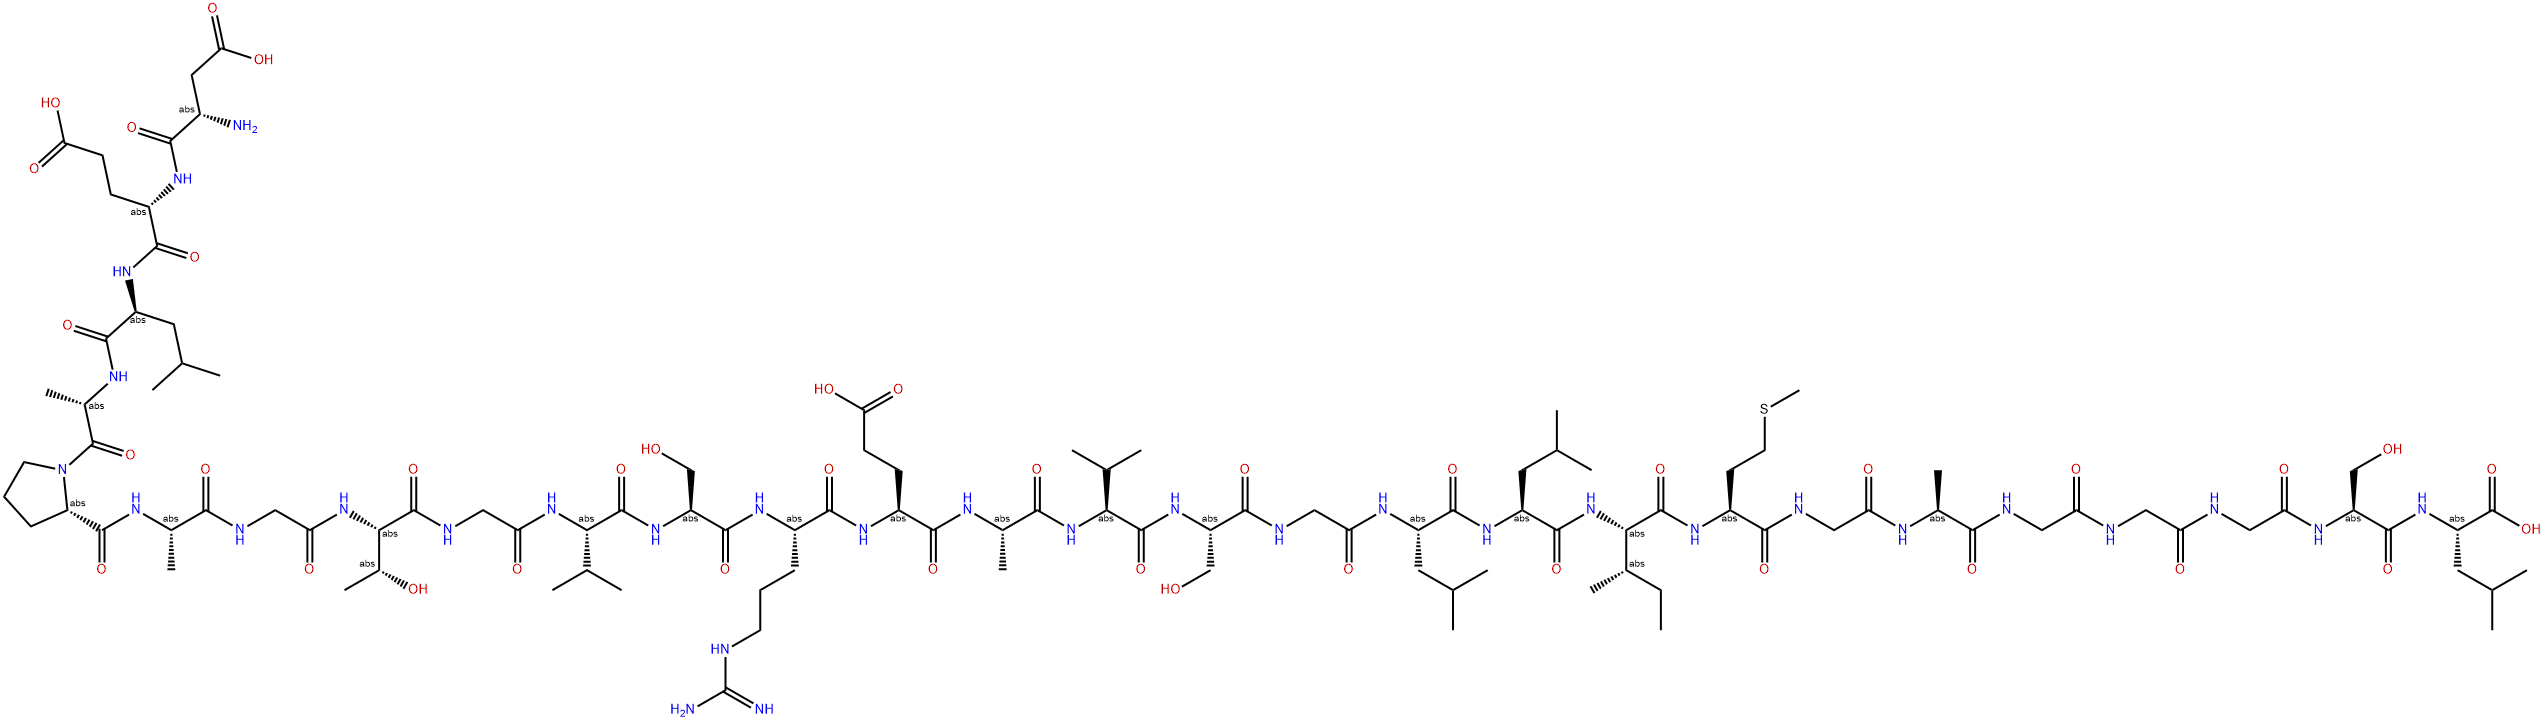 淀粉样蛋白 APL1Β28